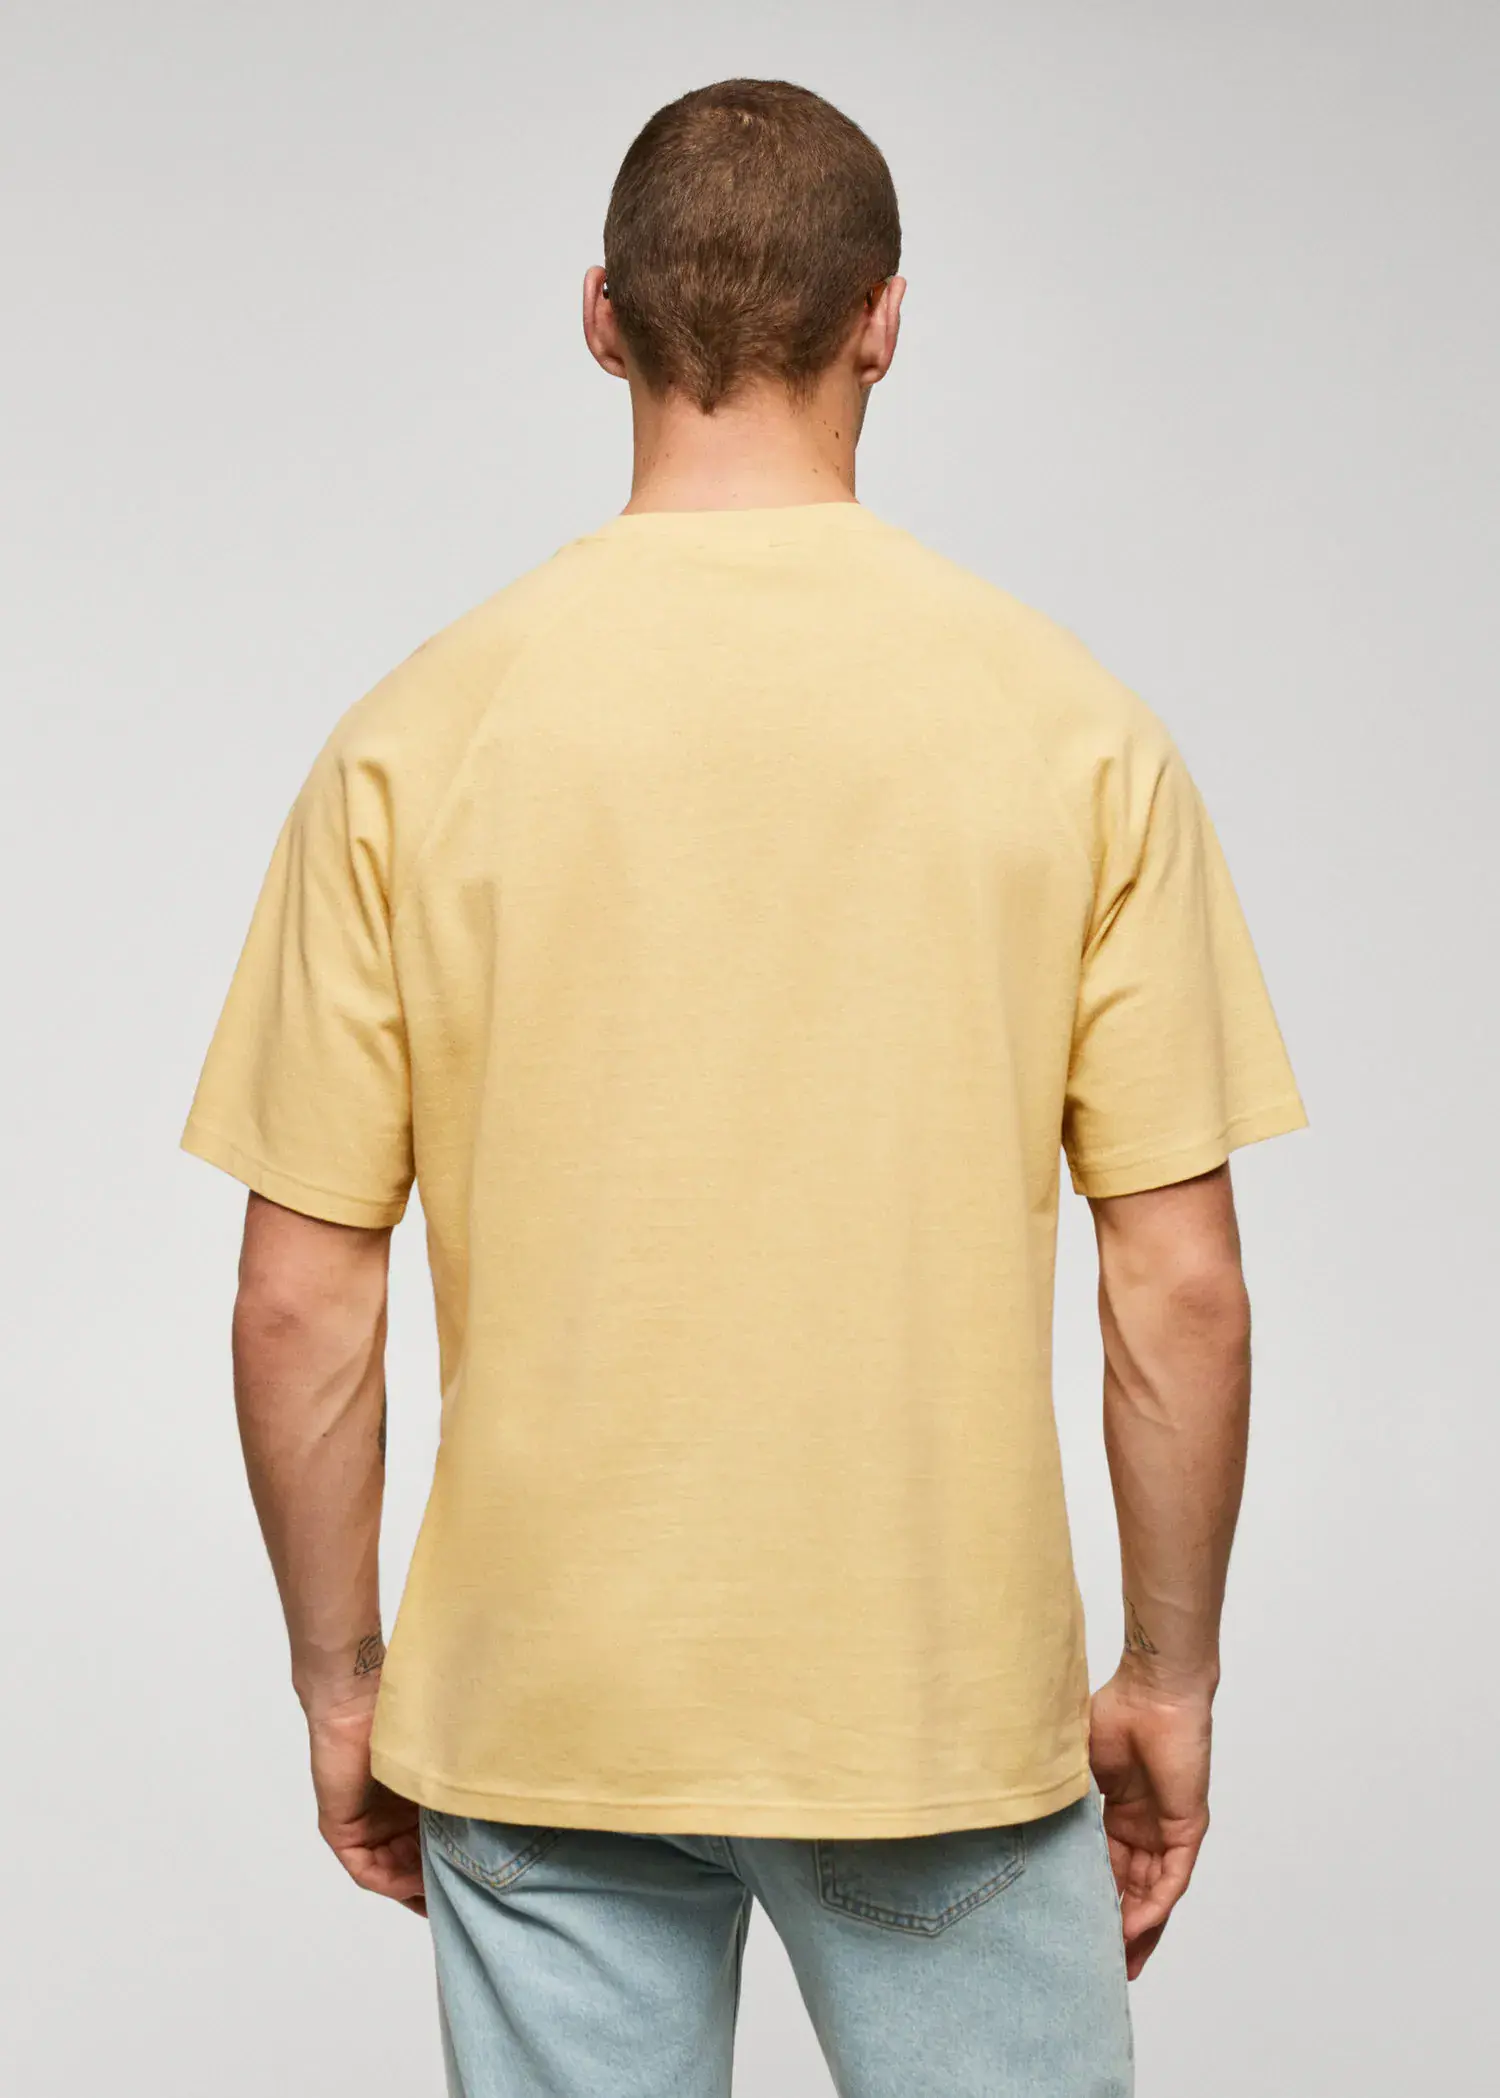 Mango T-shirt de algodão e linho com textura. 3